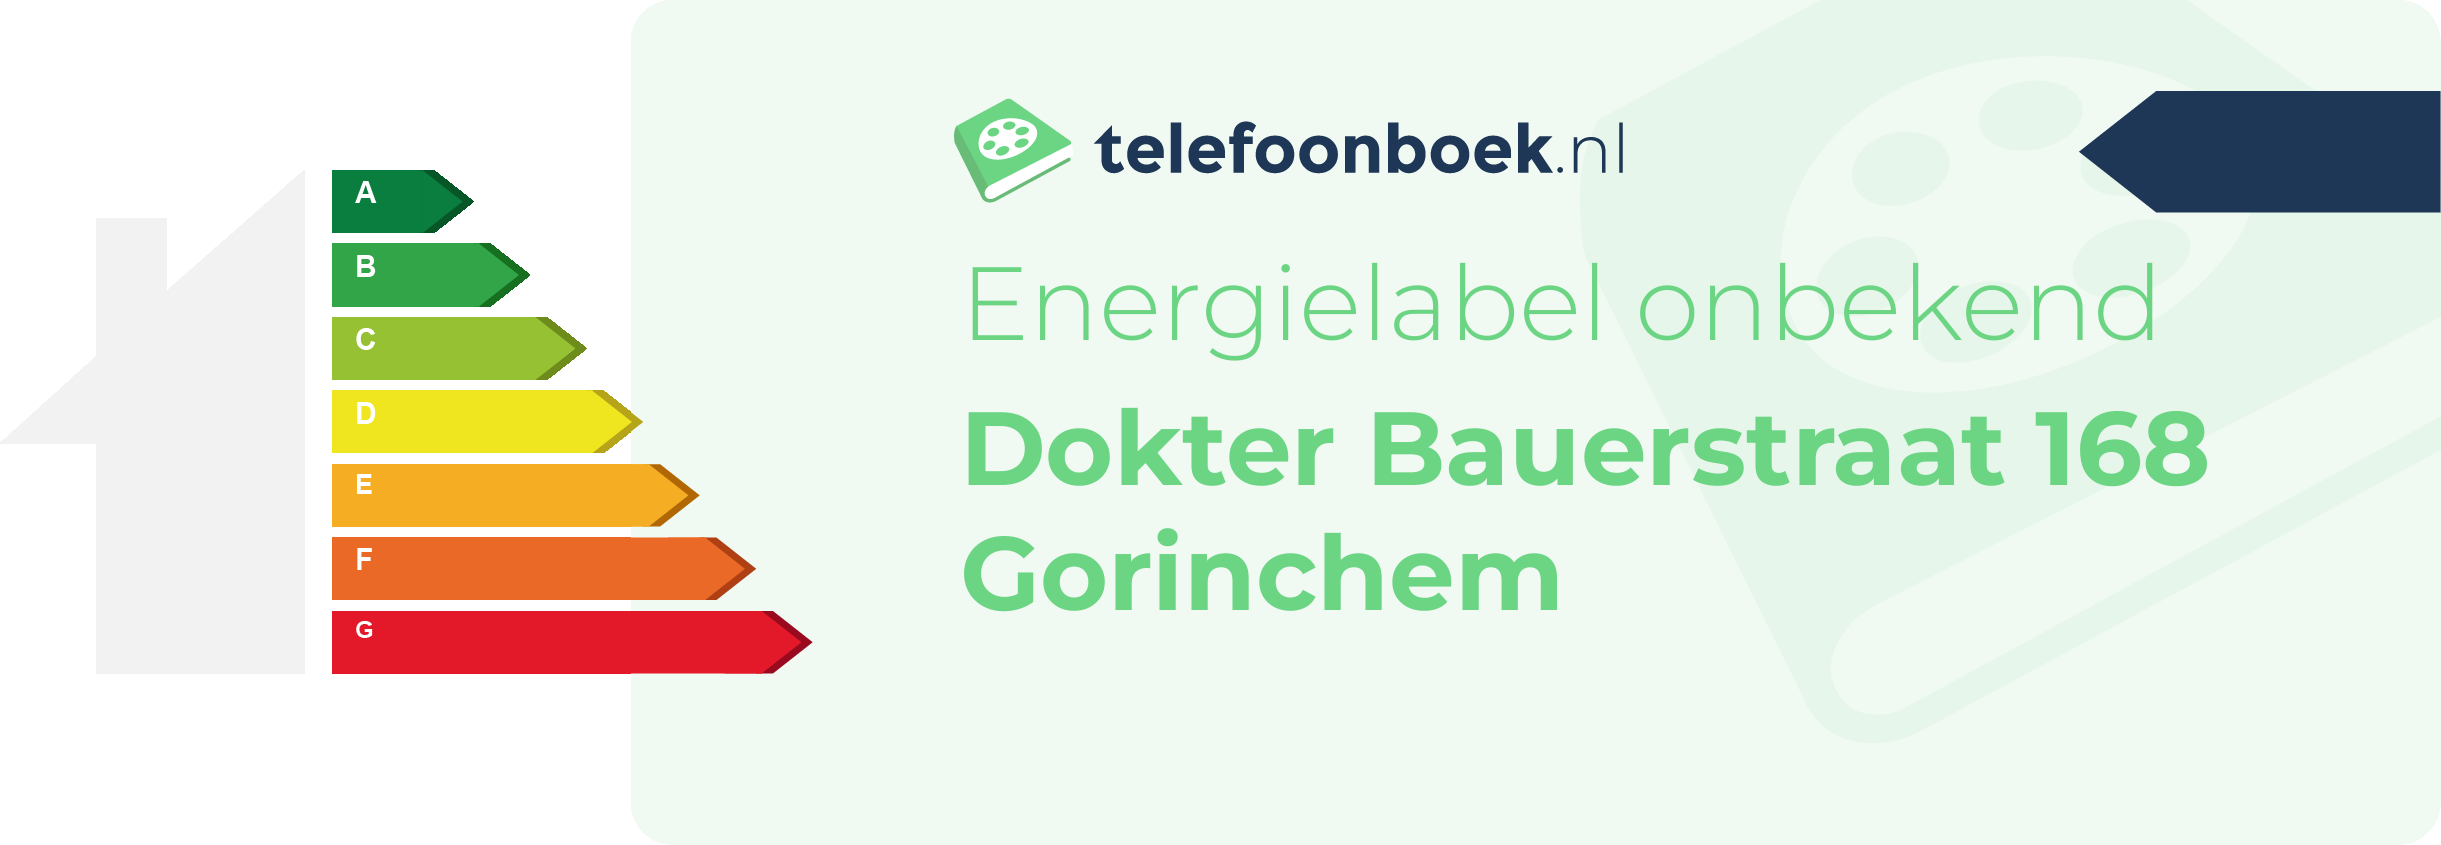 Energielabel Dokter Bauerstraat 168 Gorinchem